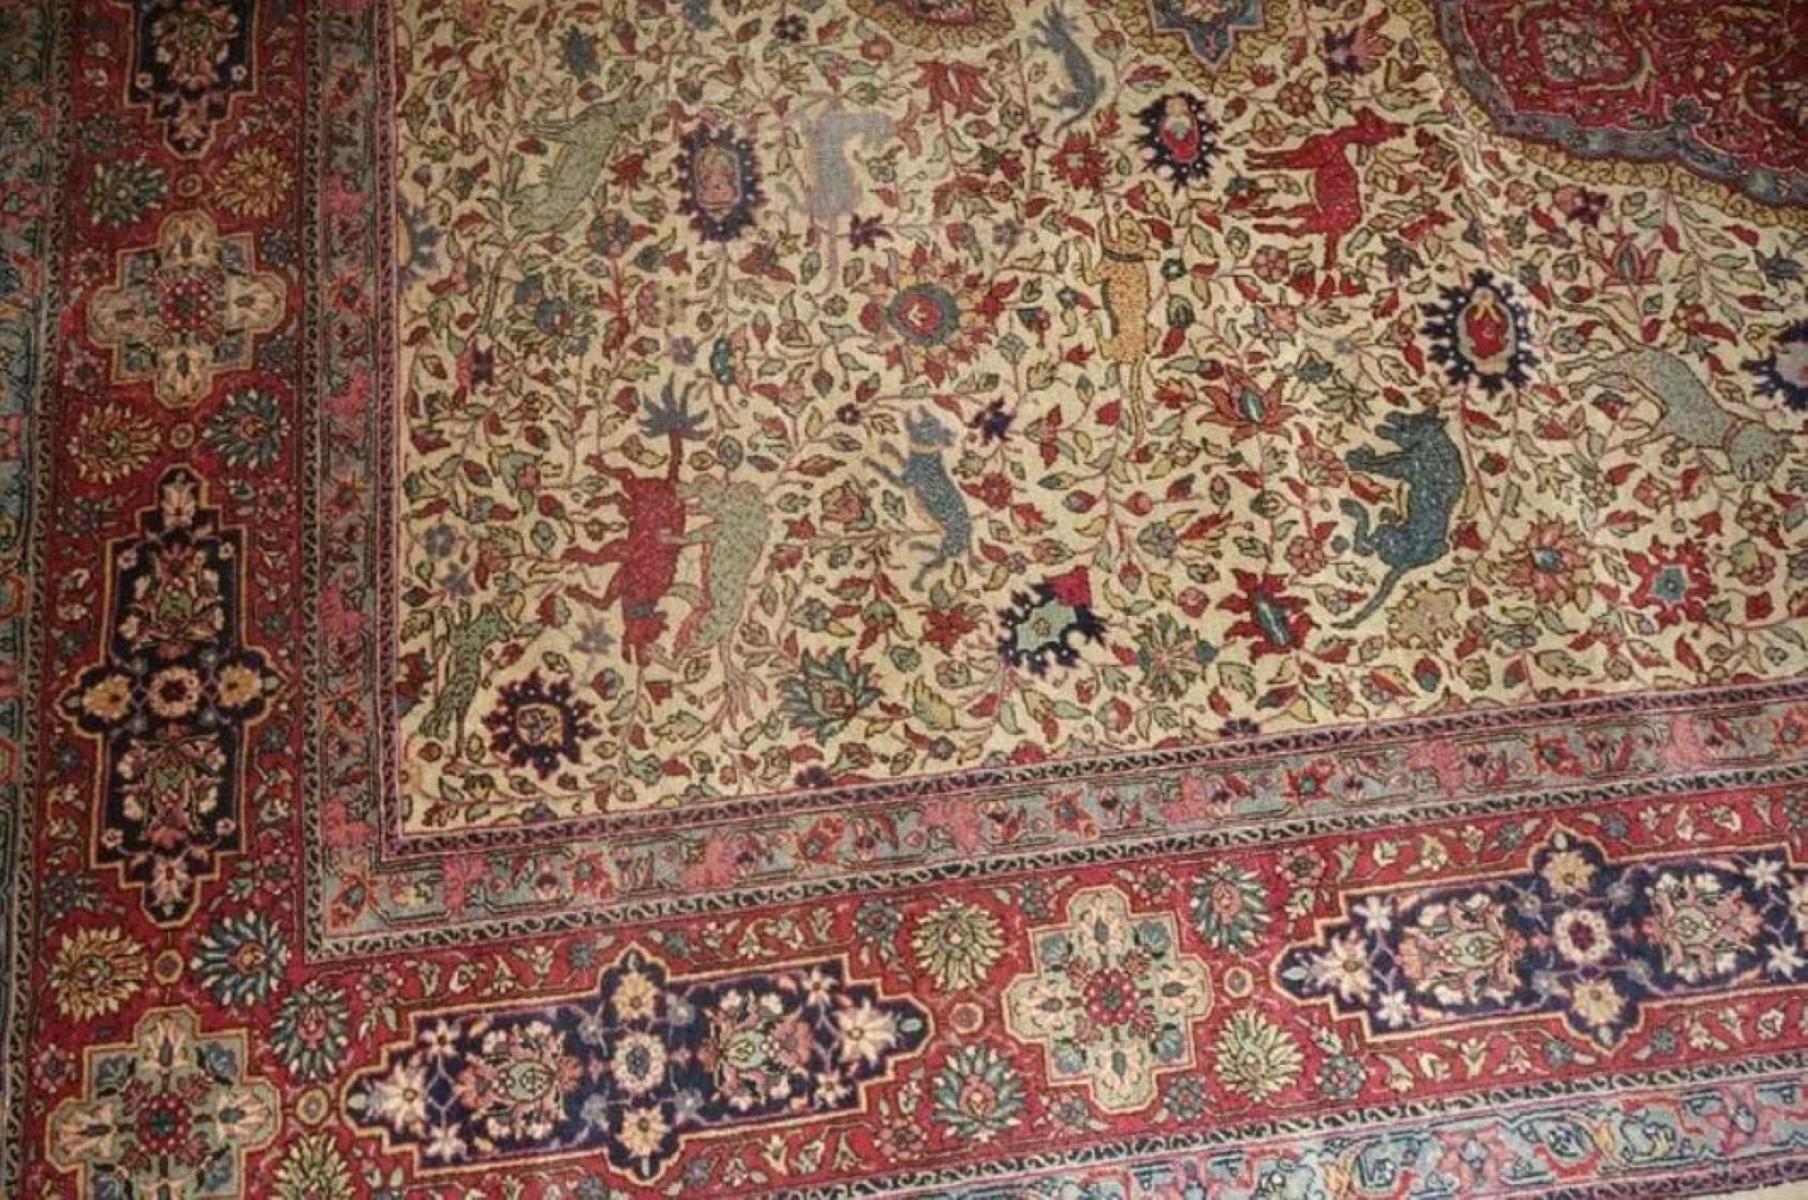 Très beau tapis persan Tabriz 500 noeuds par pouce, Taille 9 x 12 Antique, Laine et Soie. Environ 7 500 000 nœuds noués à la main, un par un. Il faut 4 ans pour réaliser cette œuvre d'art.